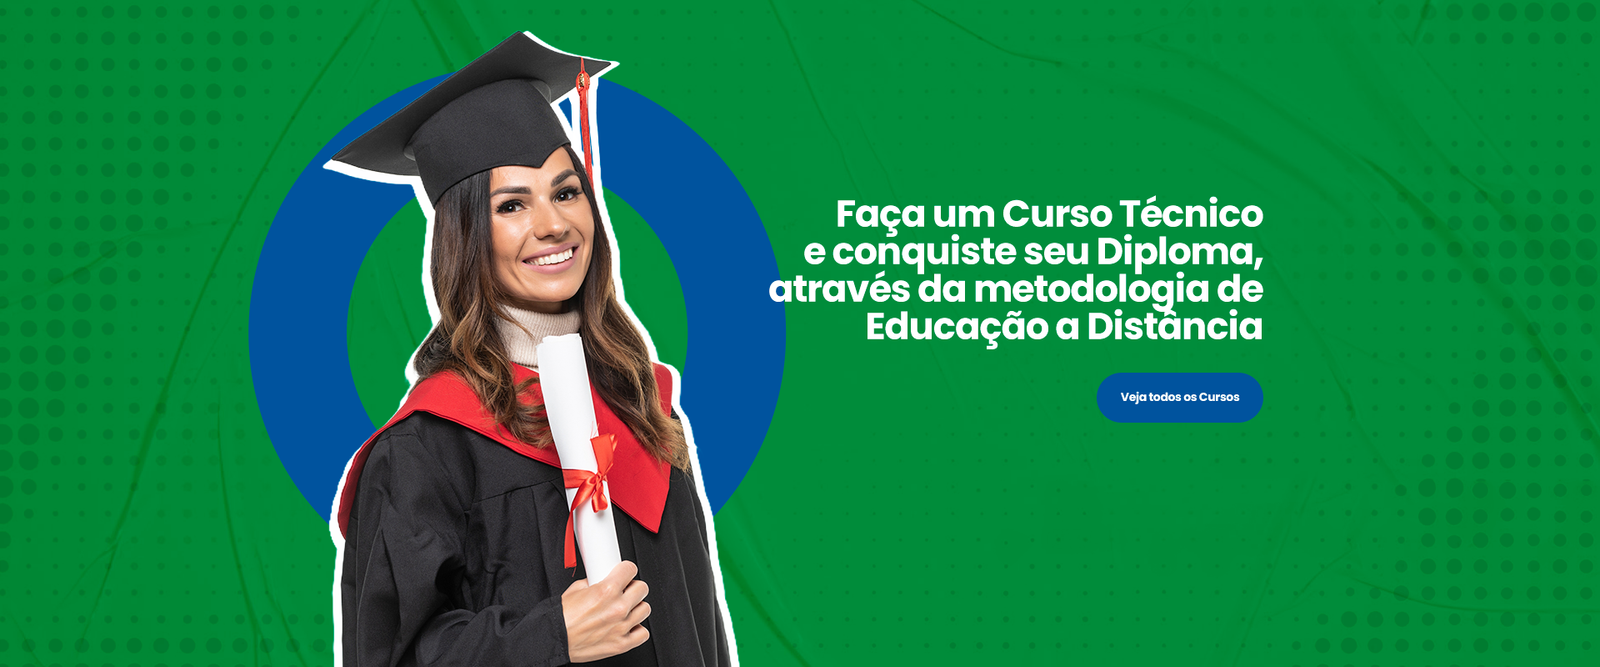 Faça um Curso Técnico no Forma Brasil Educacional